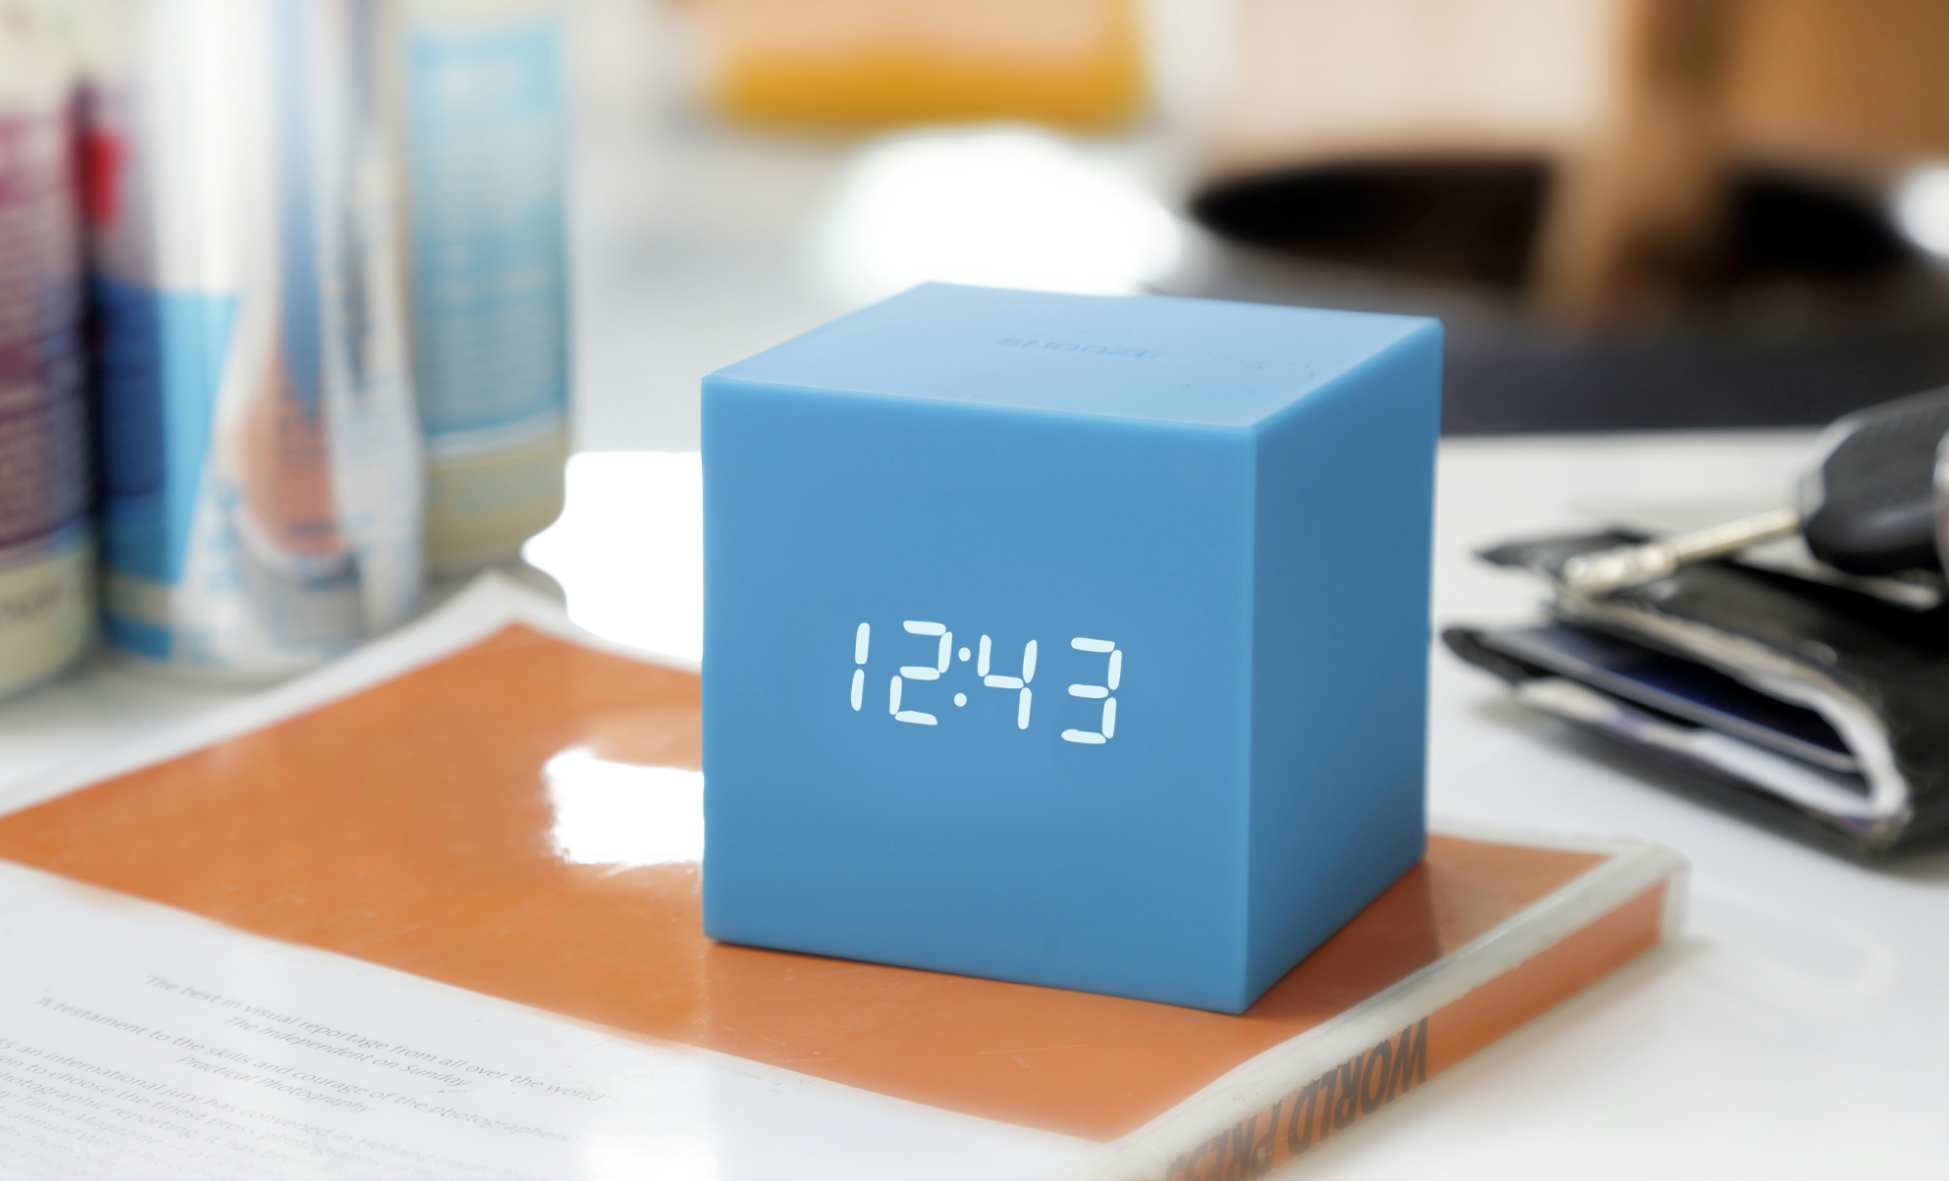 Cube Click Clock by Gingko 